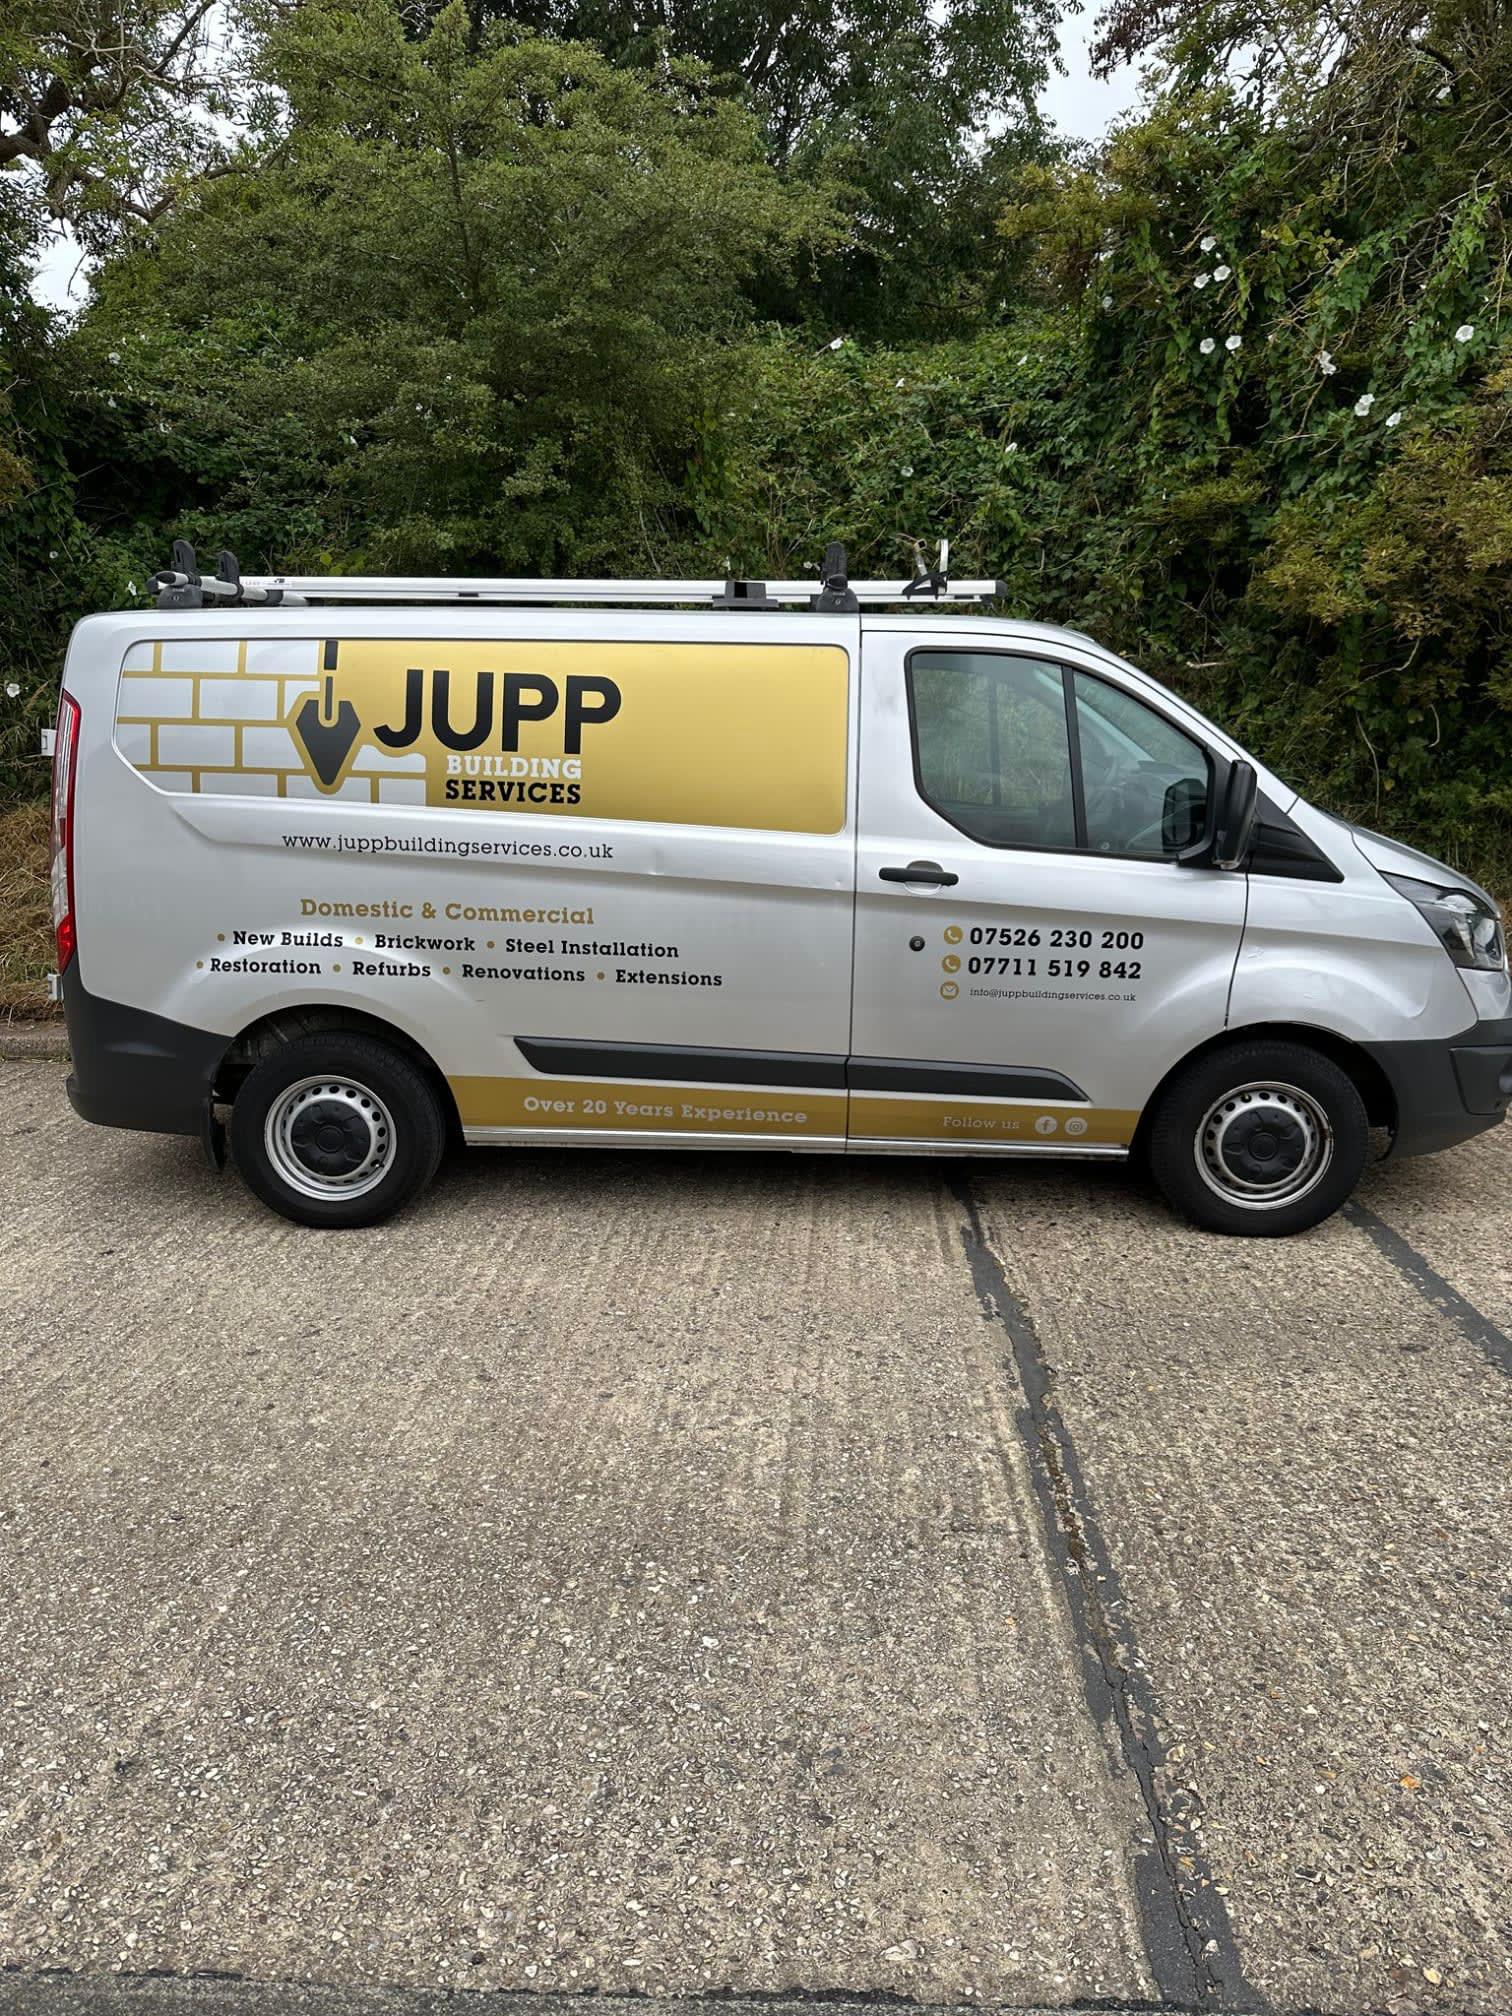 Images Jupp Building Services Ltd